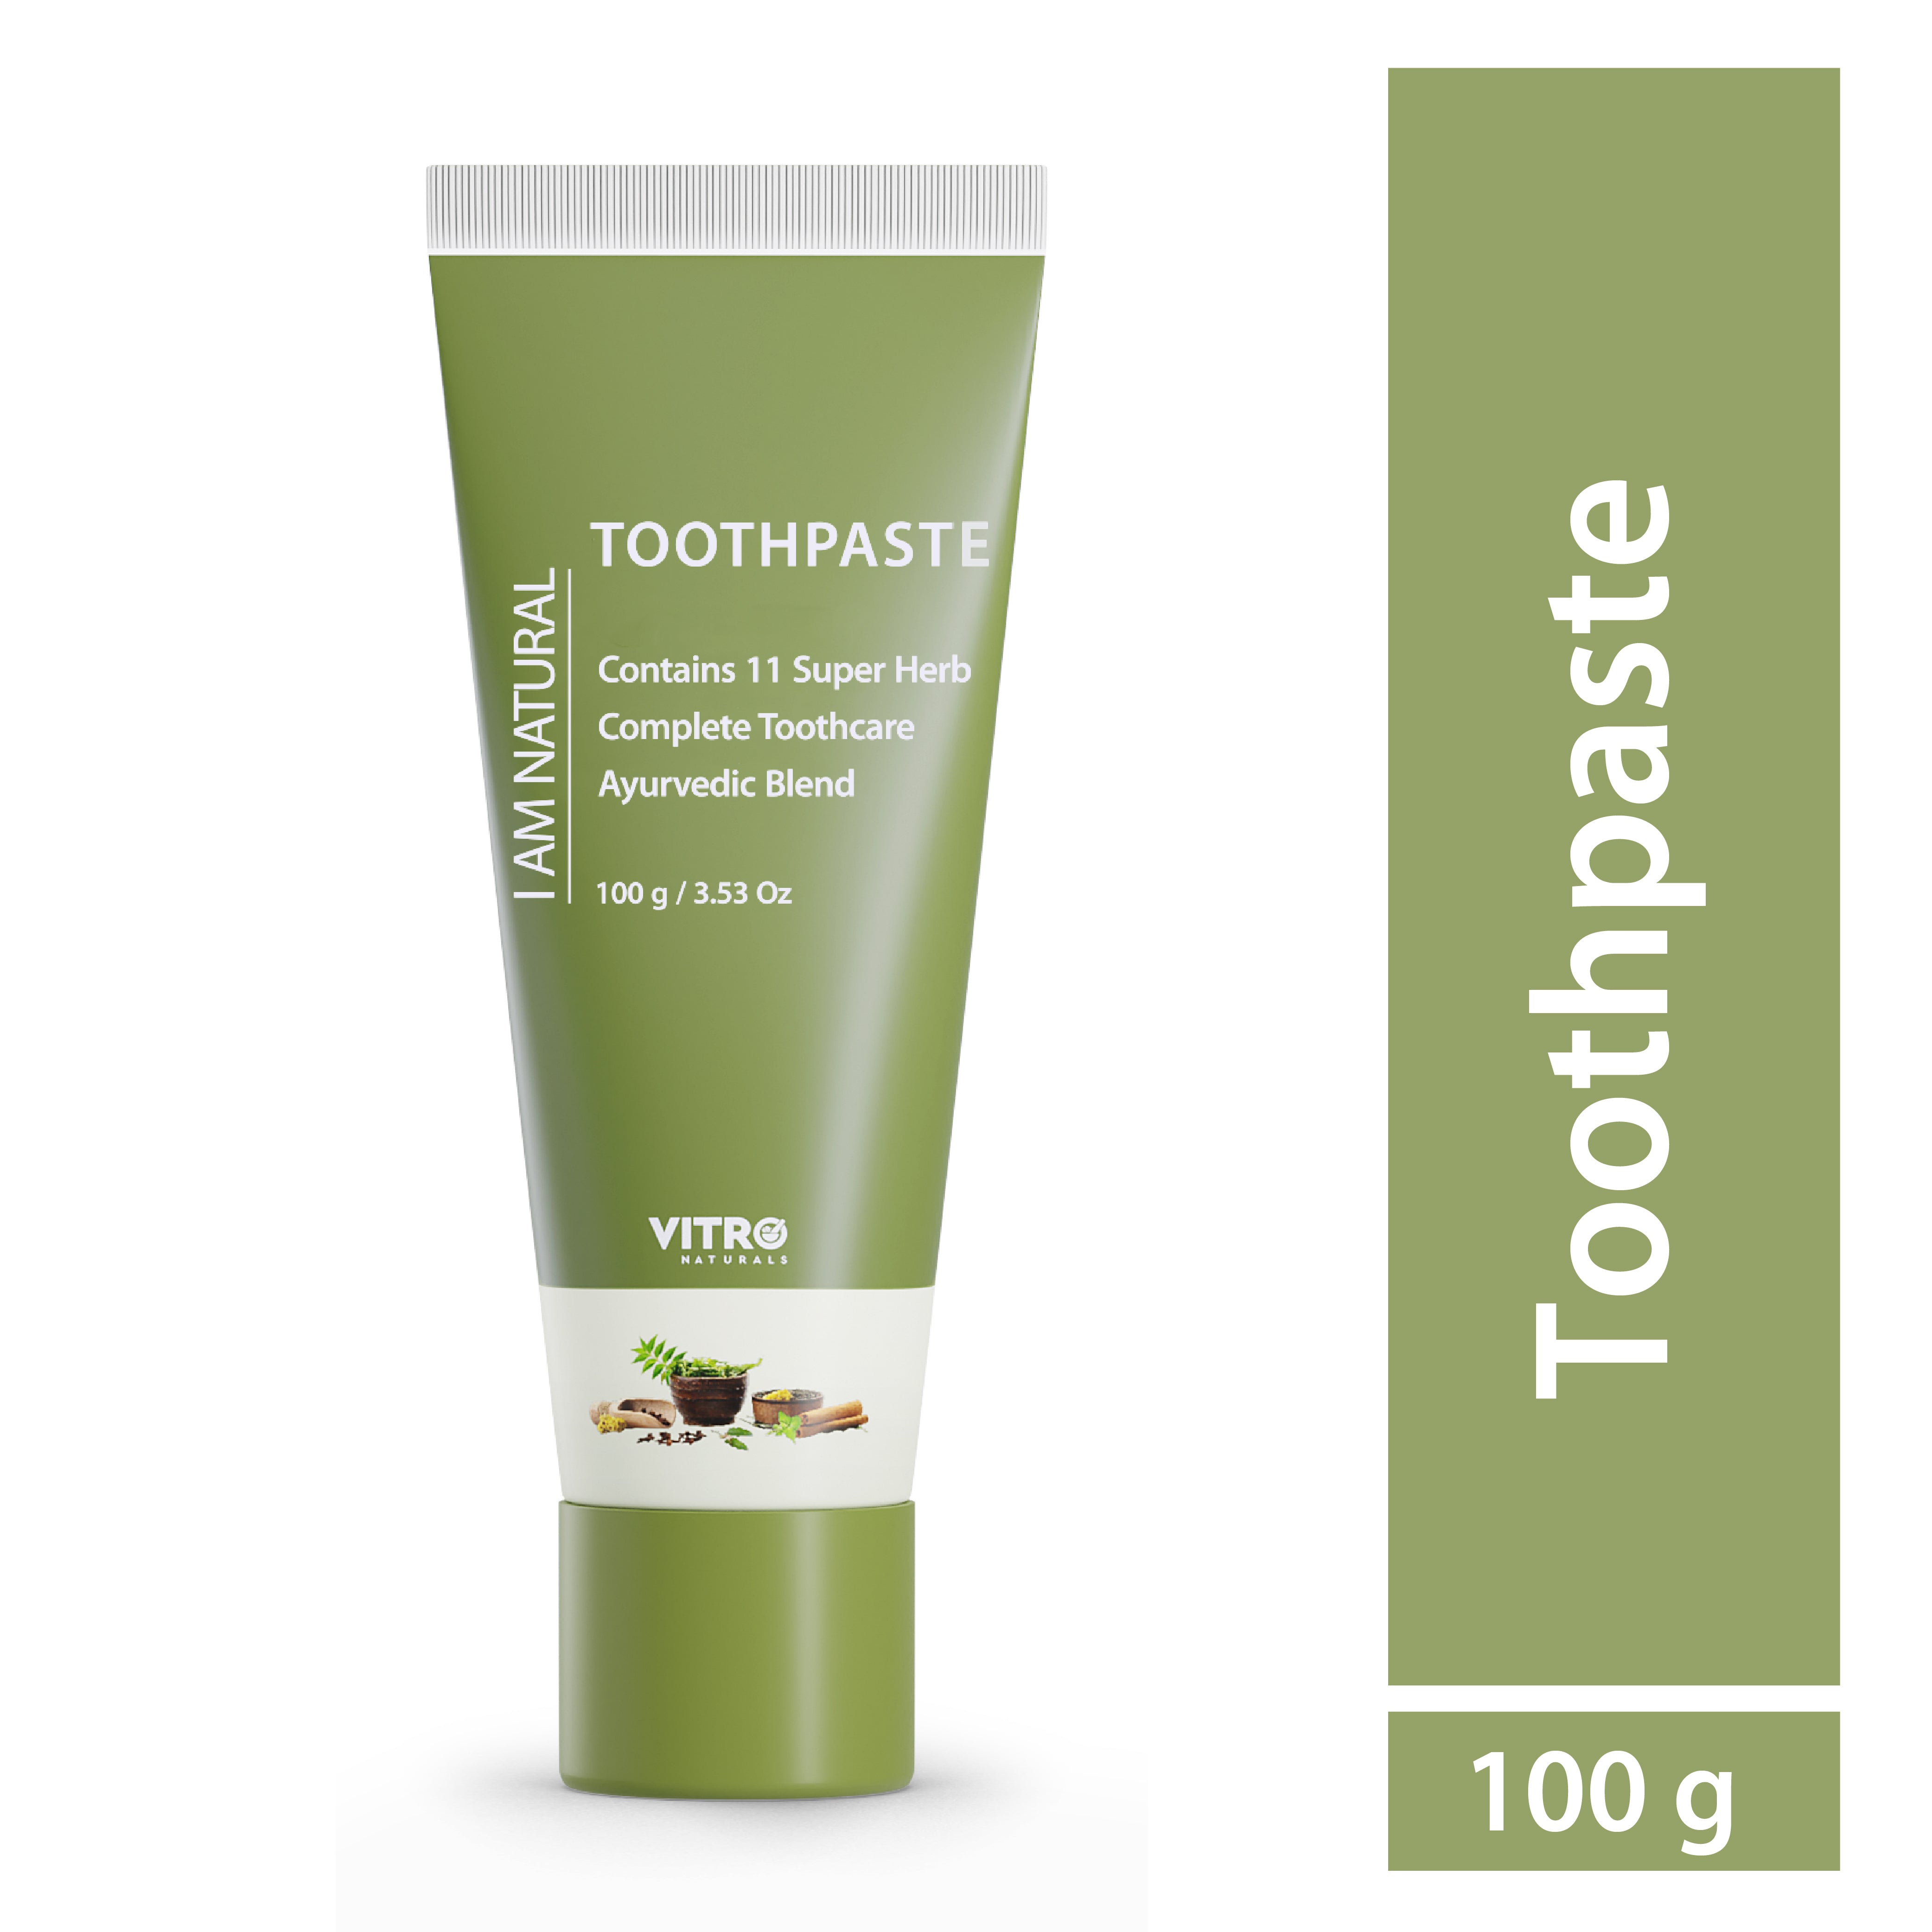 Vitro natural toothpaste